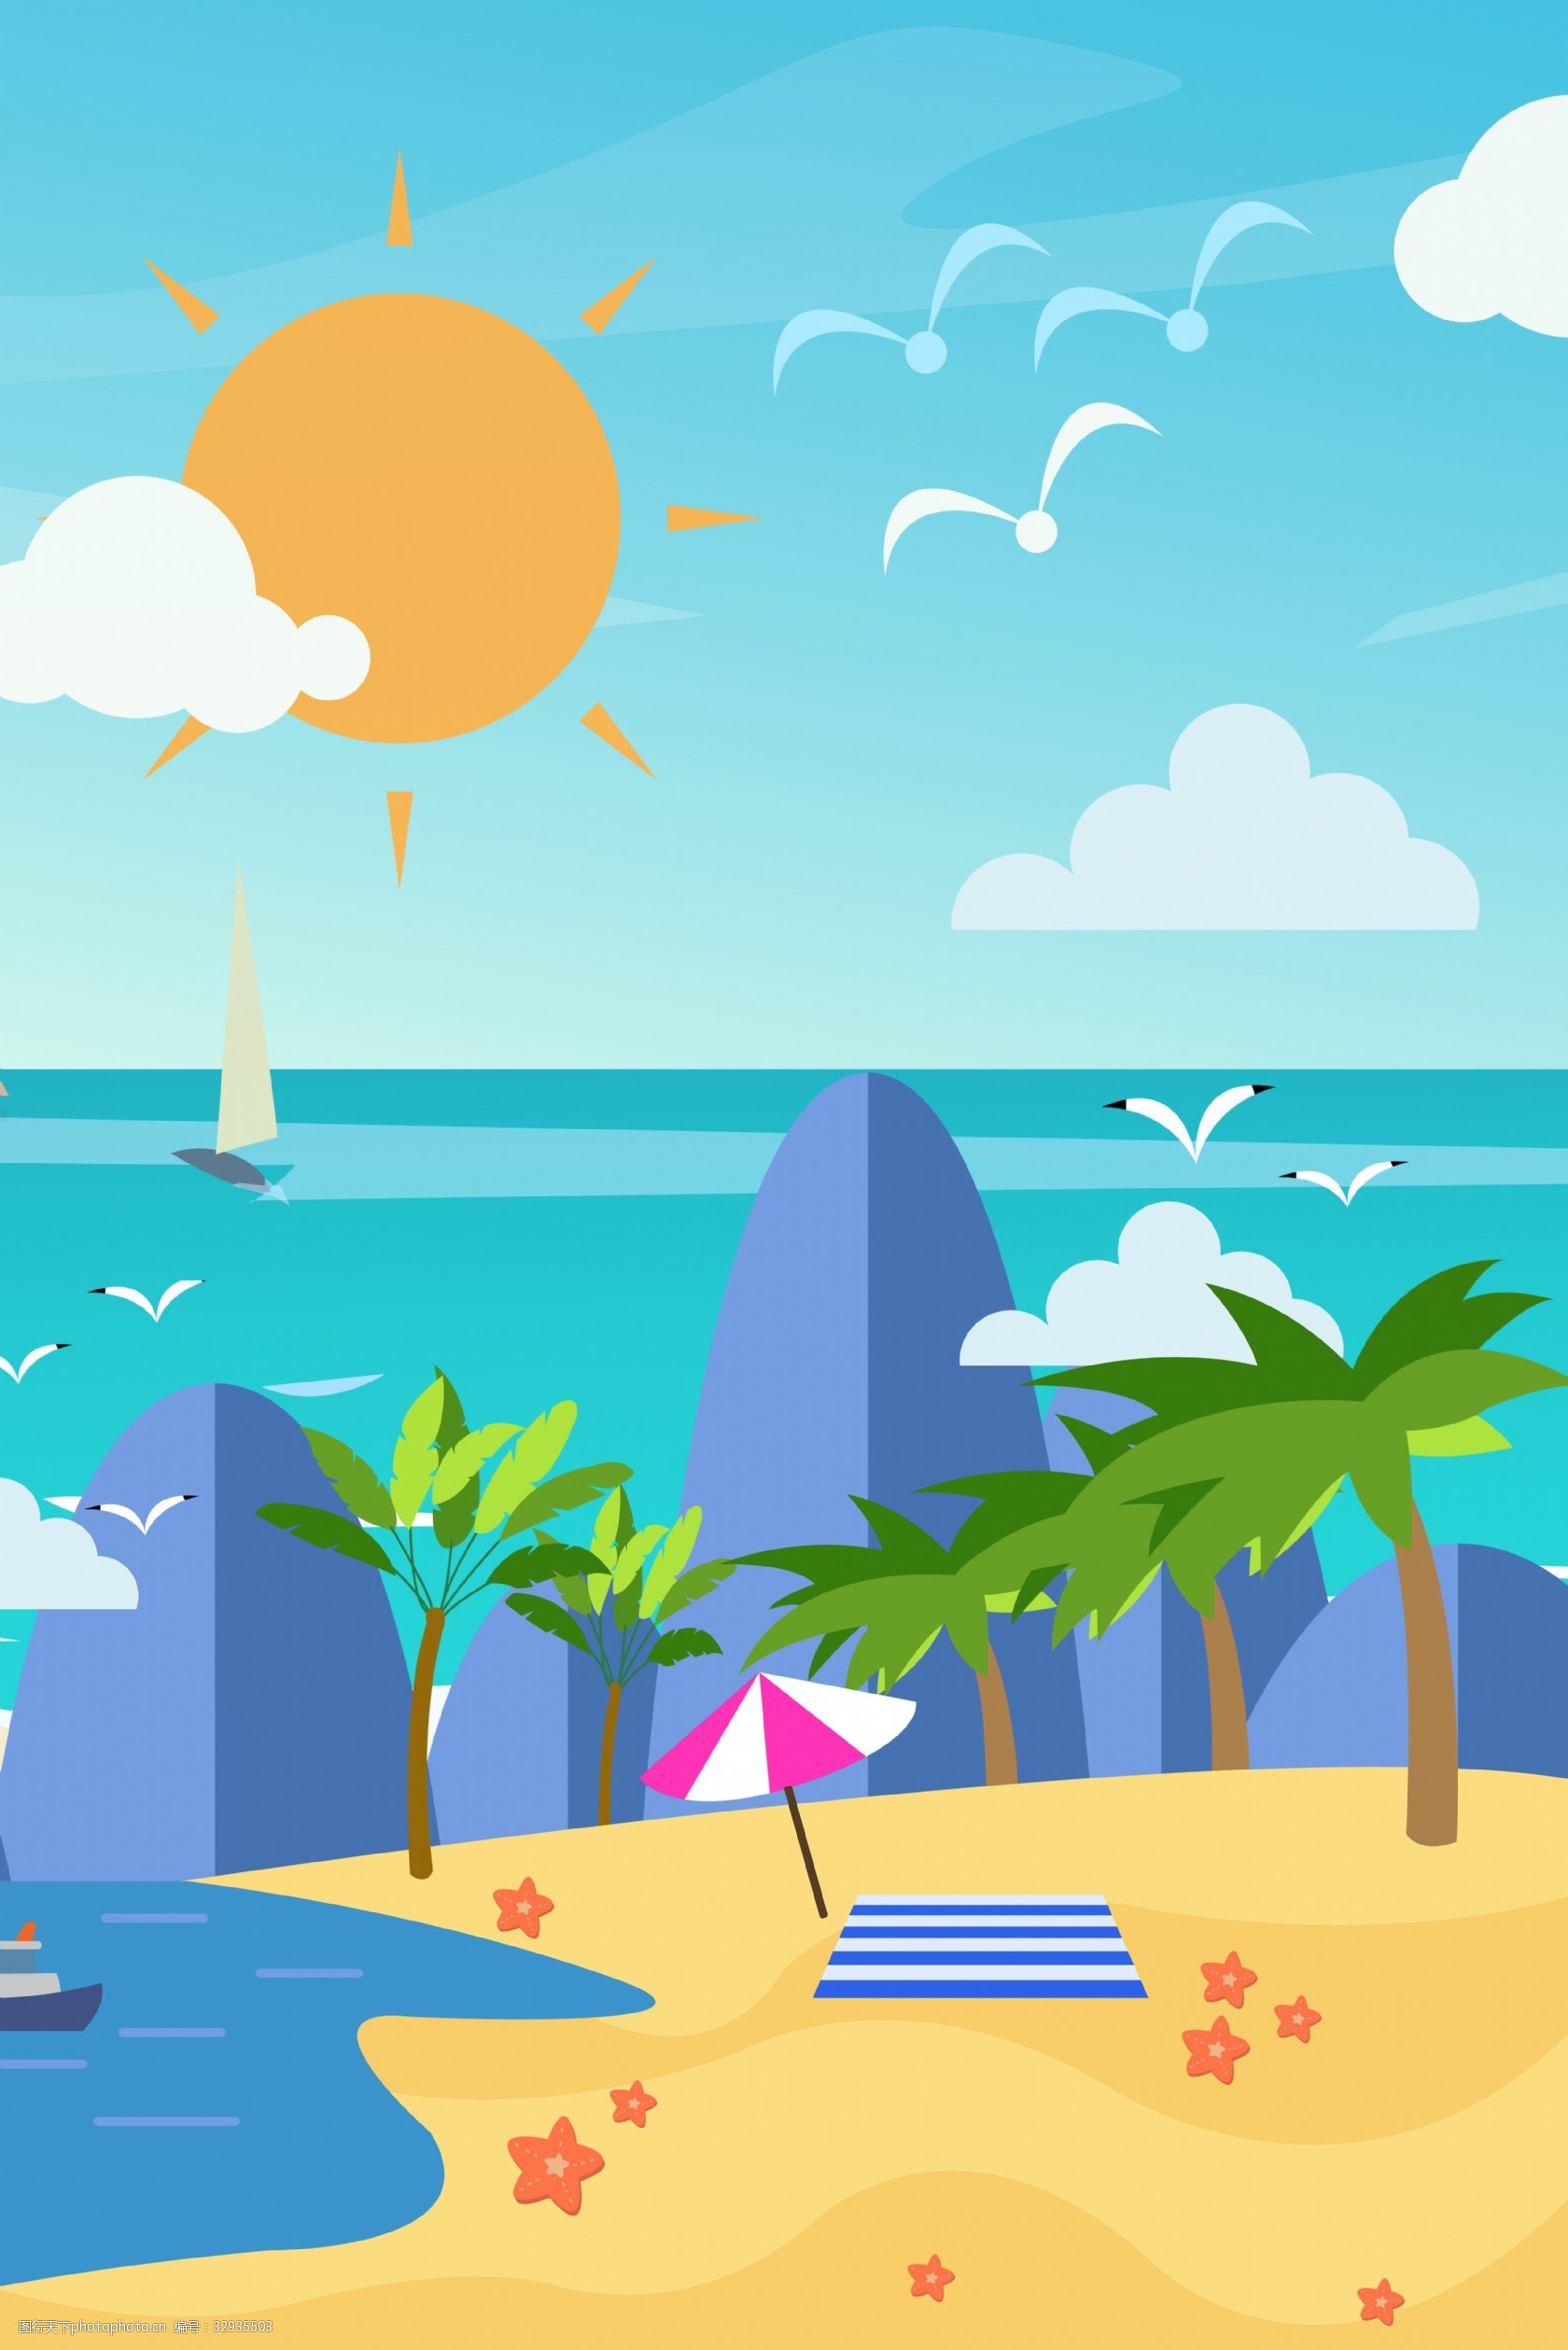 关键词:海边沙滩阳光背景 暑假来了 页面装饰 假期 夏天 夏至 大海